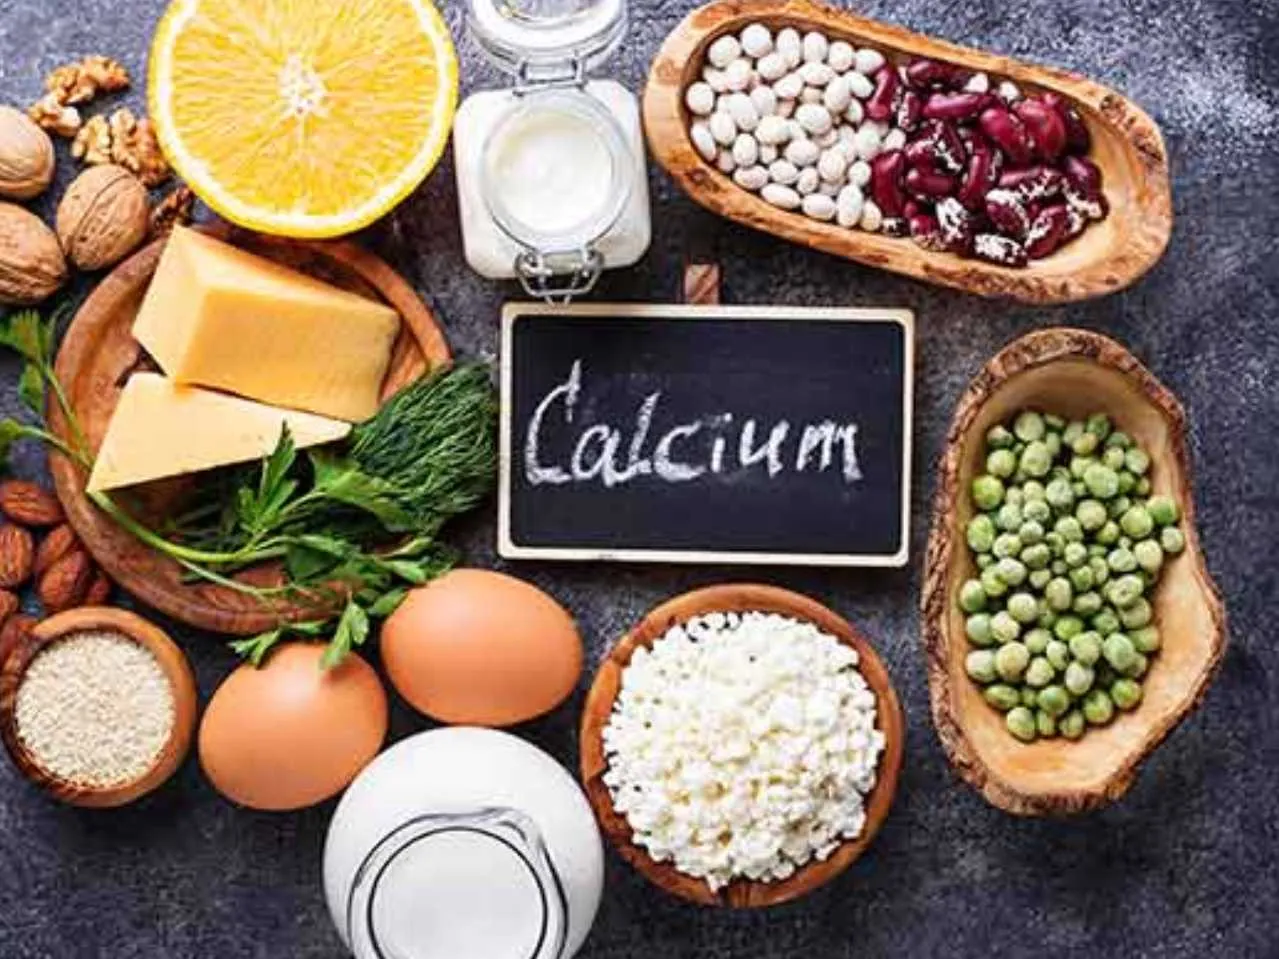 Calcium rich diet